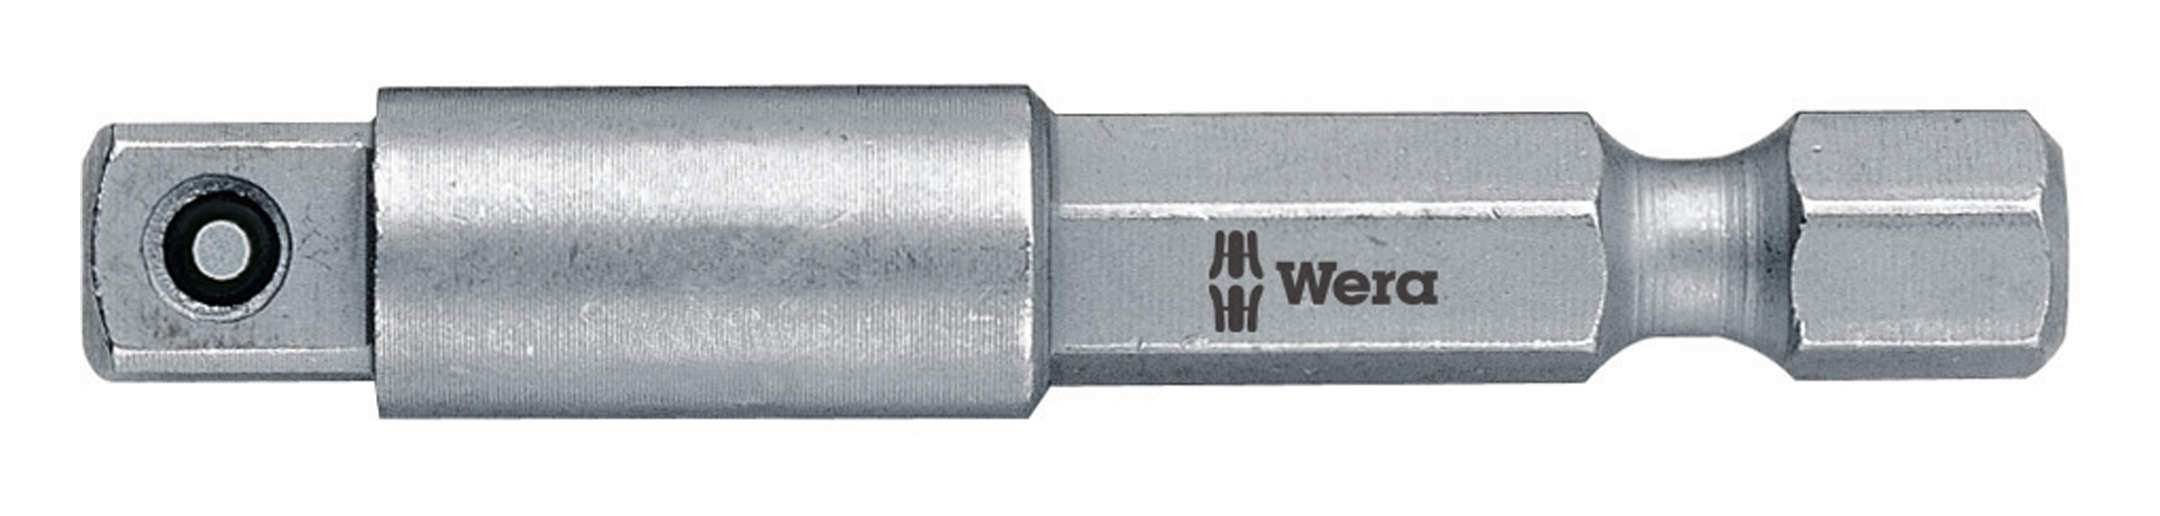 Wera Steckschlüssel, Adapter 1/4" für 1/4" Einsatz 100 mm